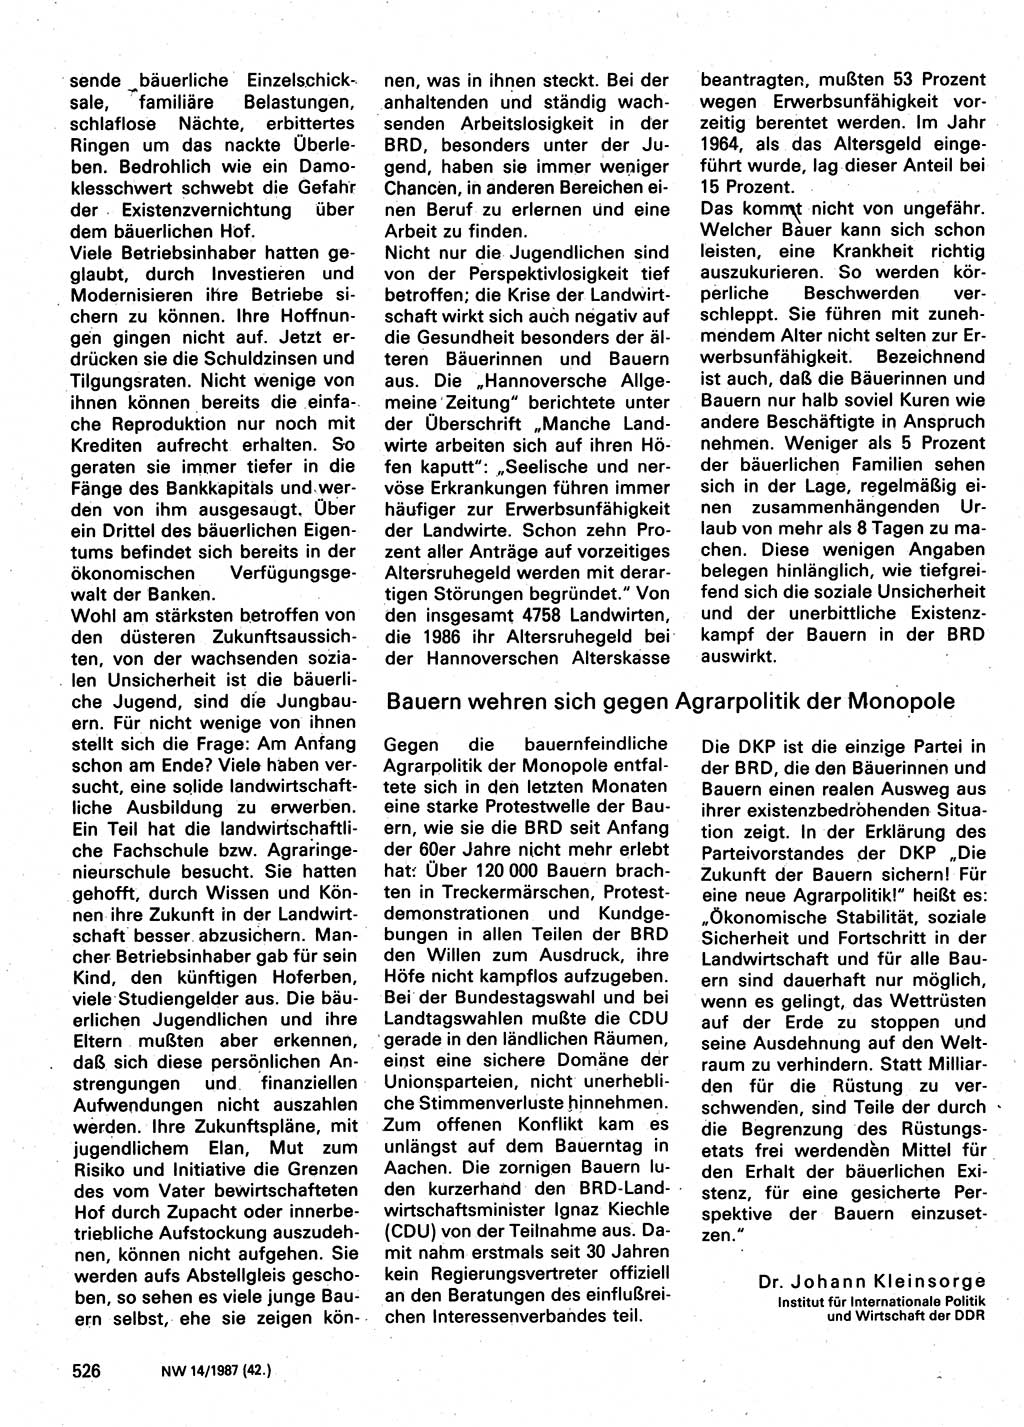 Neuer Weg (NW), Organ des Zentralkomitees (ZK) der SED (Sozialistische Einheitspartei Deutschlands) für Fragen des Parteilebens, 42. Jahrgang [Deutsche Demokratische Republik (DDR)] 1987, Seite 526 (NW ZK SED DDR 1987, S. 526)